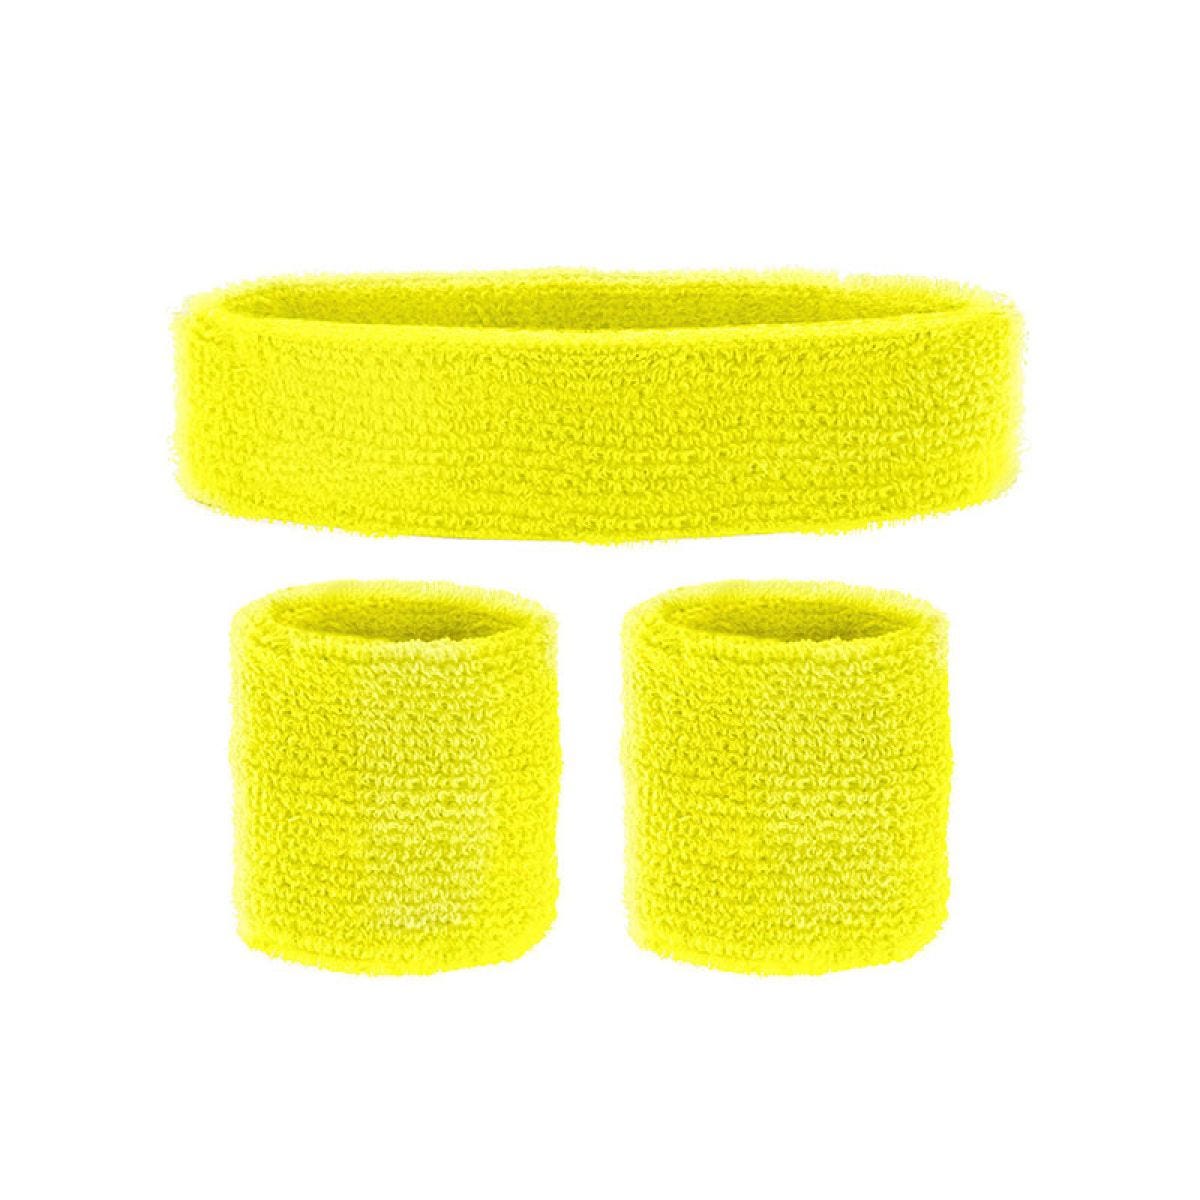 Yellow Sweatband Accessory Kit Adult